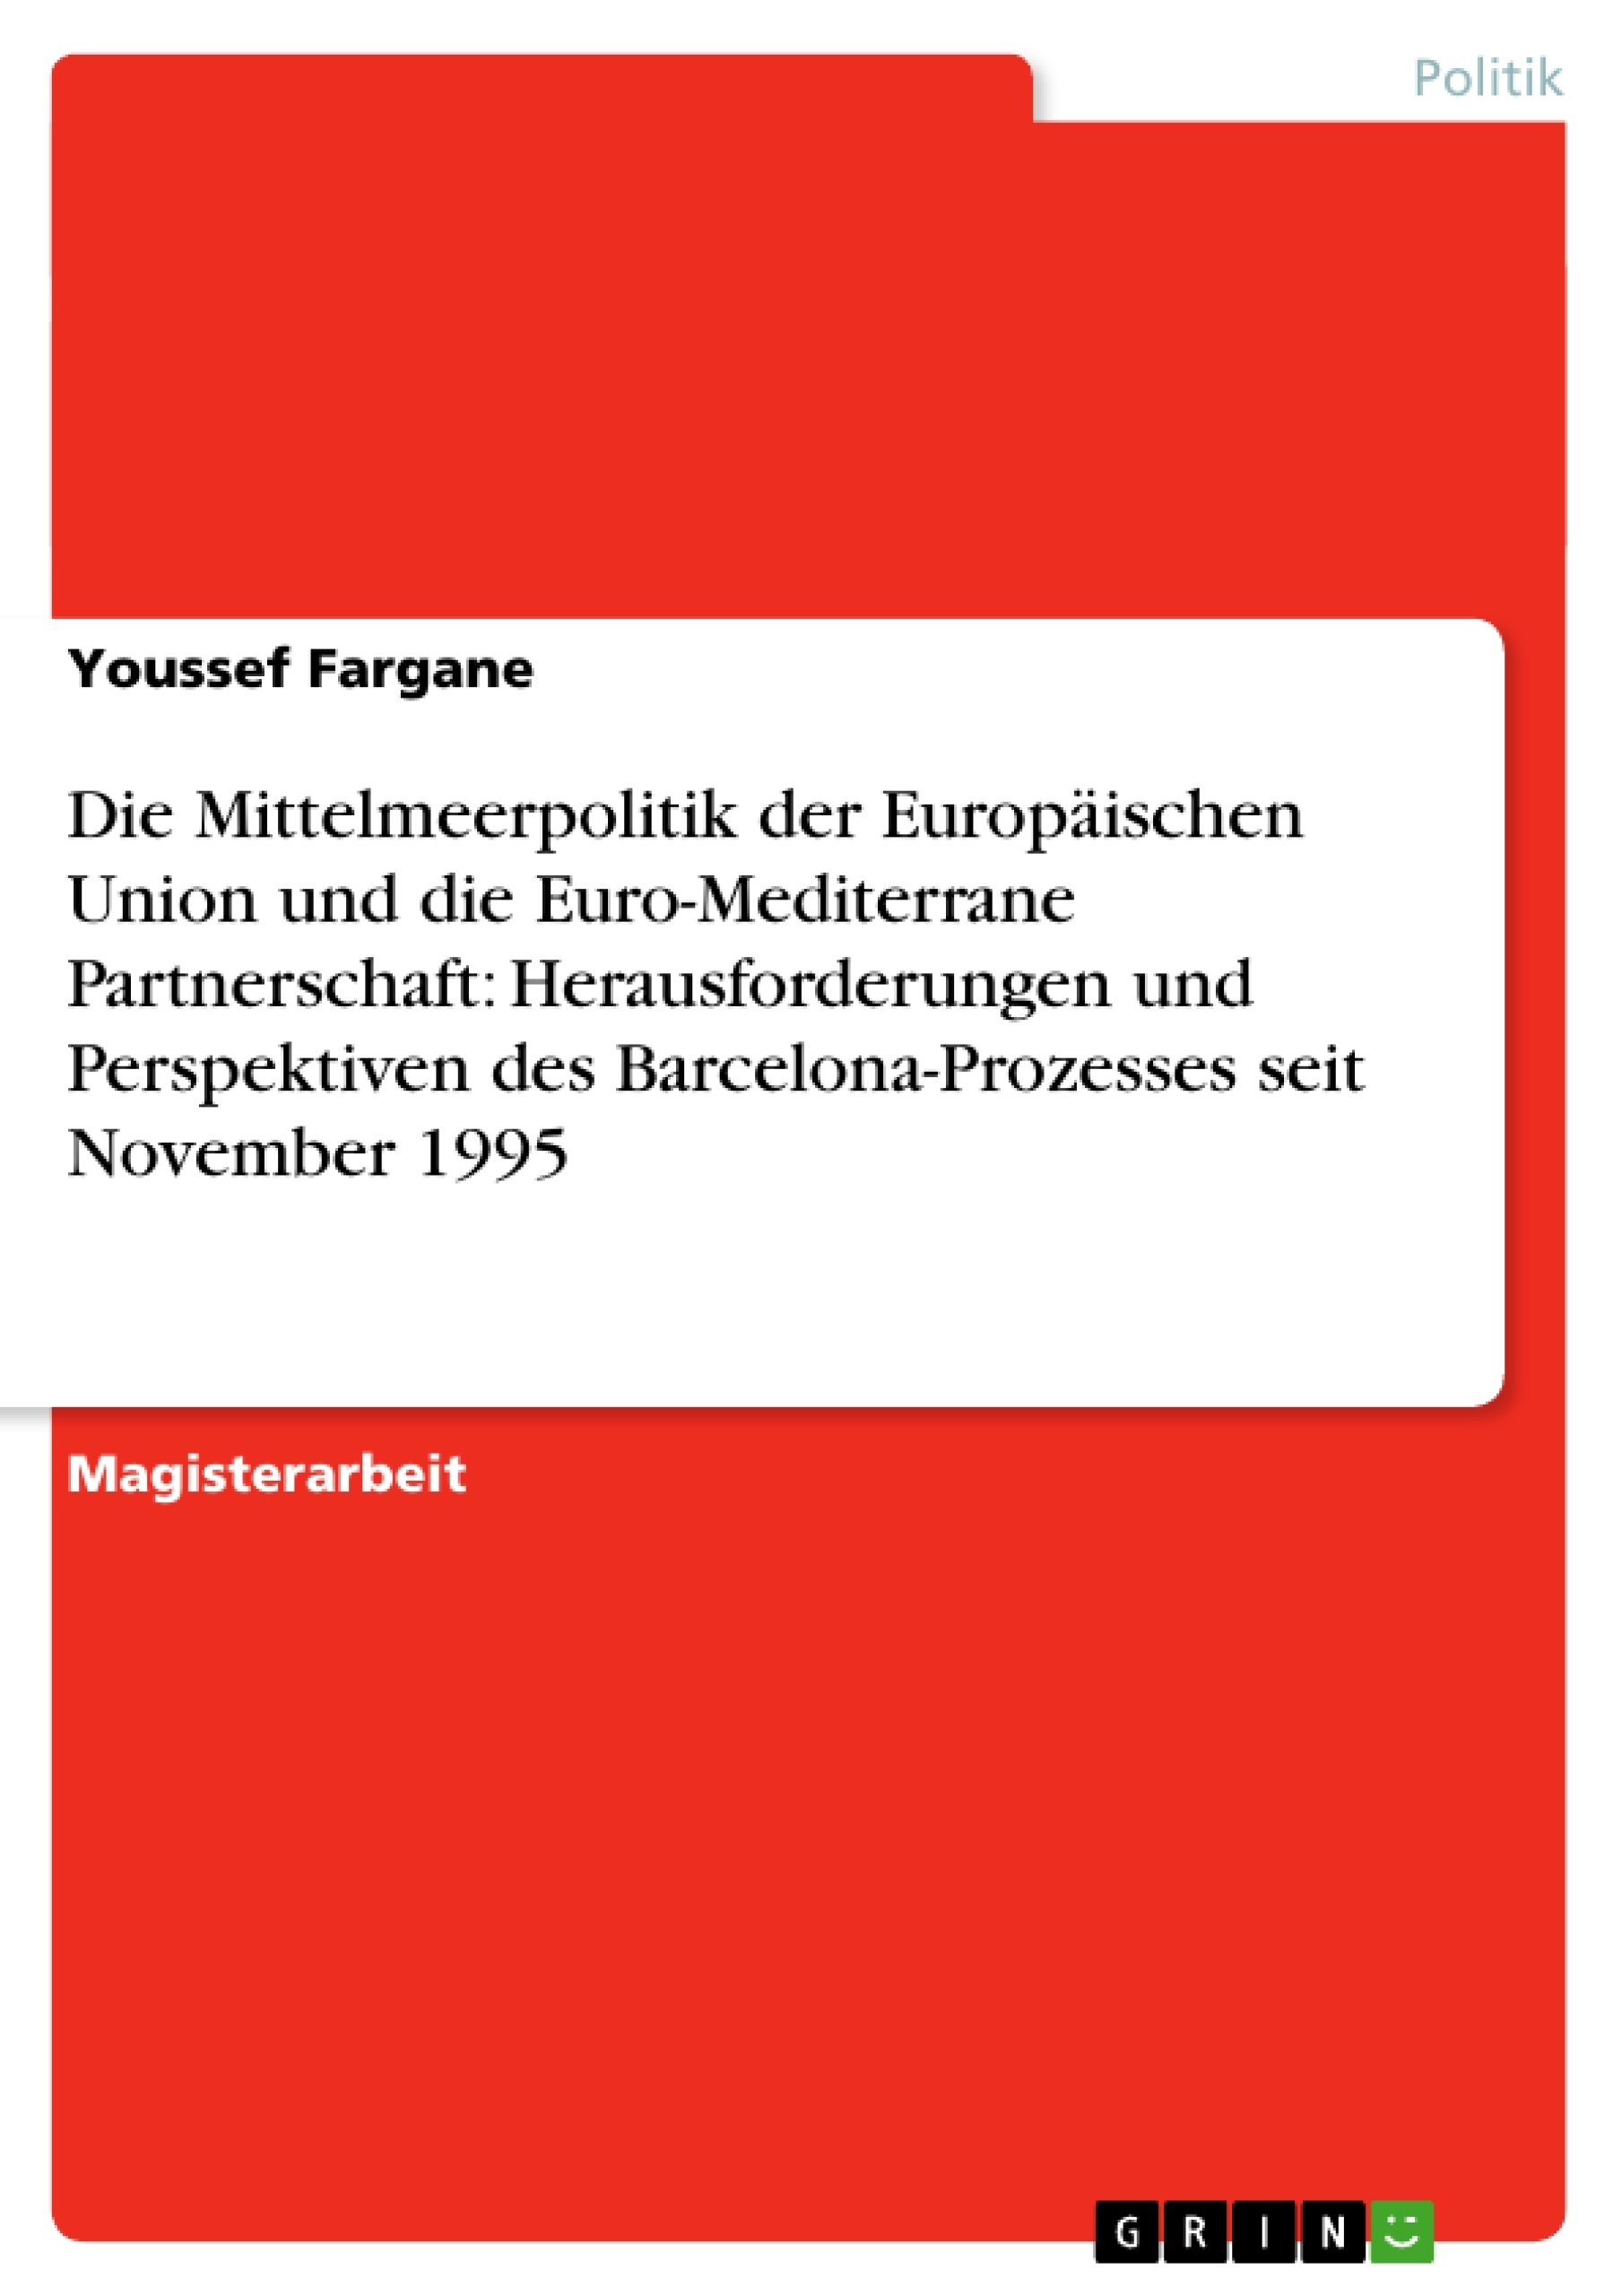 Título: Die Mittelmeerpolitik der Europäischen Union und die Euro-Mediterrane Partnerschaft: Herausforderungen und Perspektiven des Barcelona-Prozesses seit November 1995